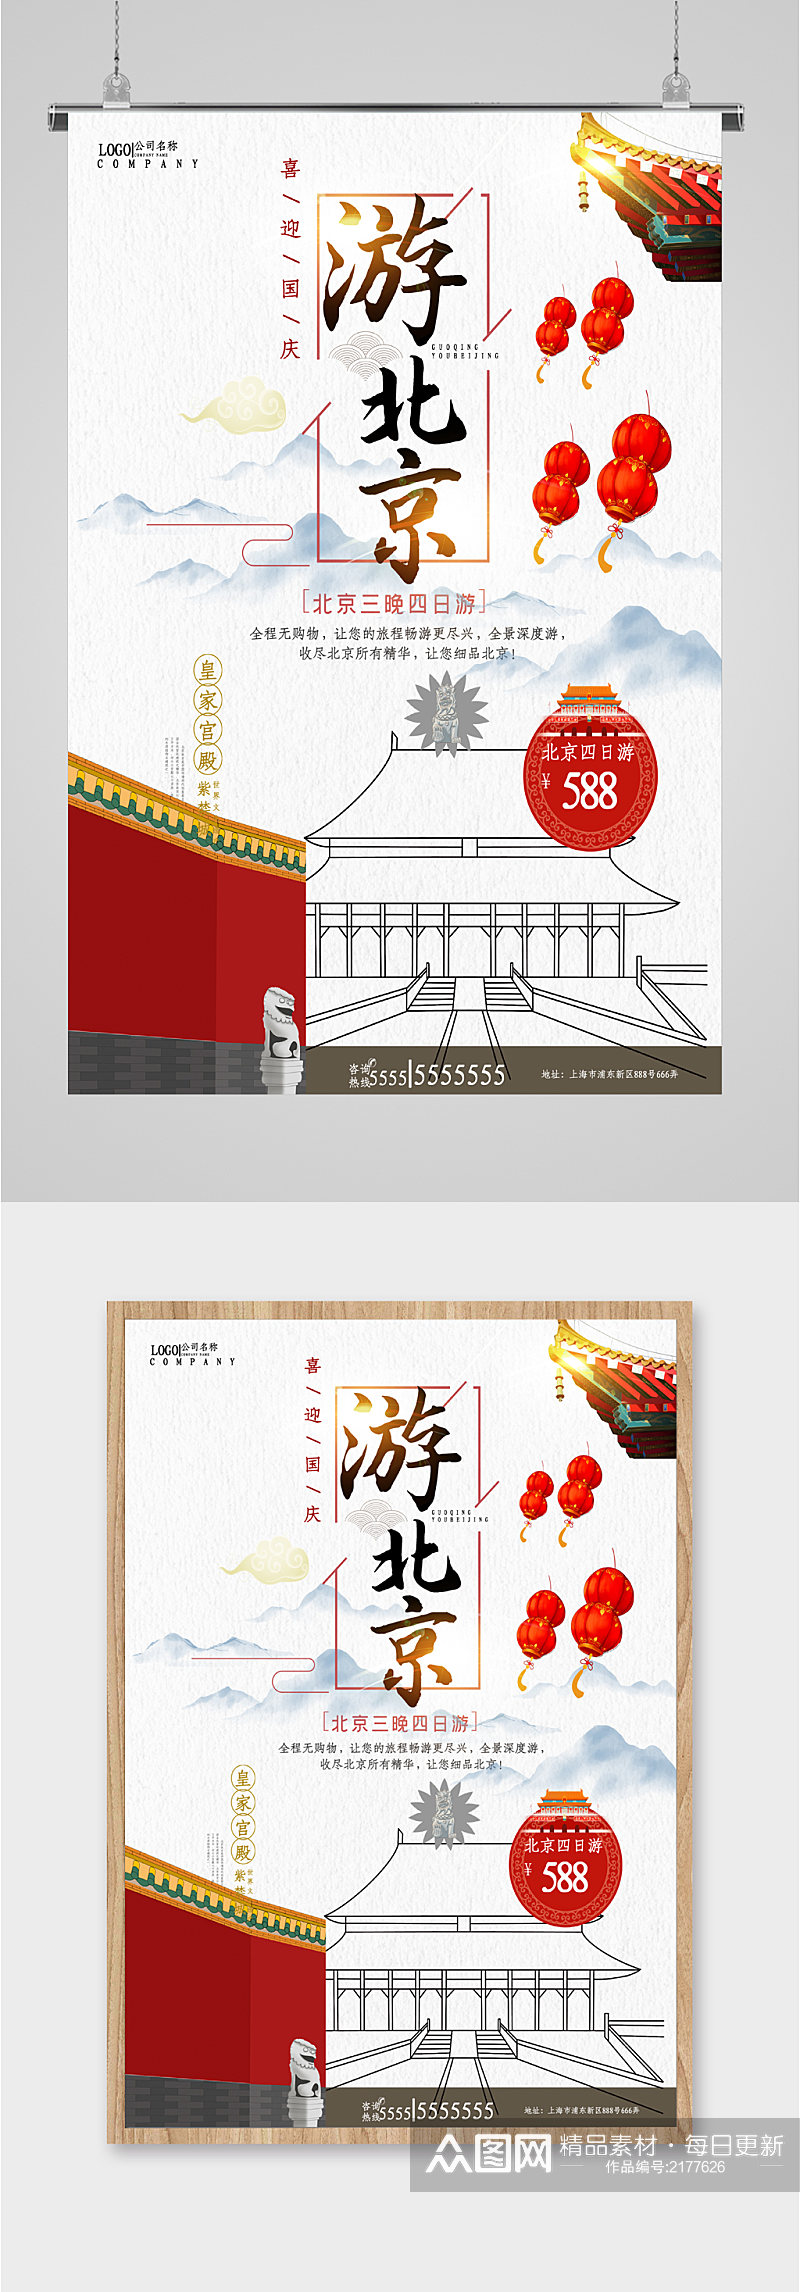 北京风景旅游海报素材